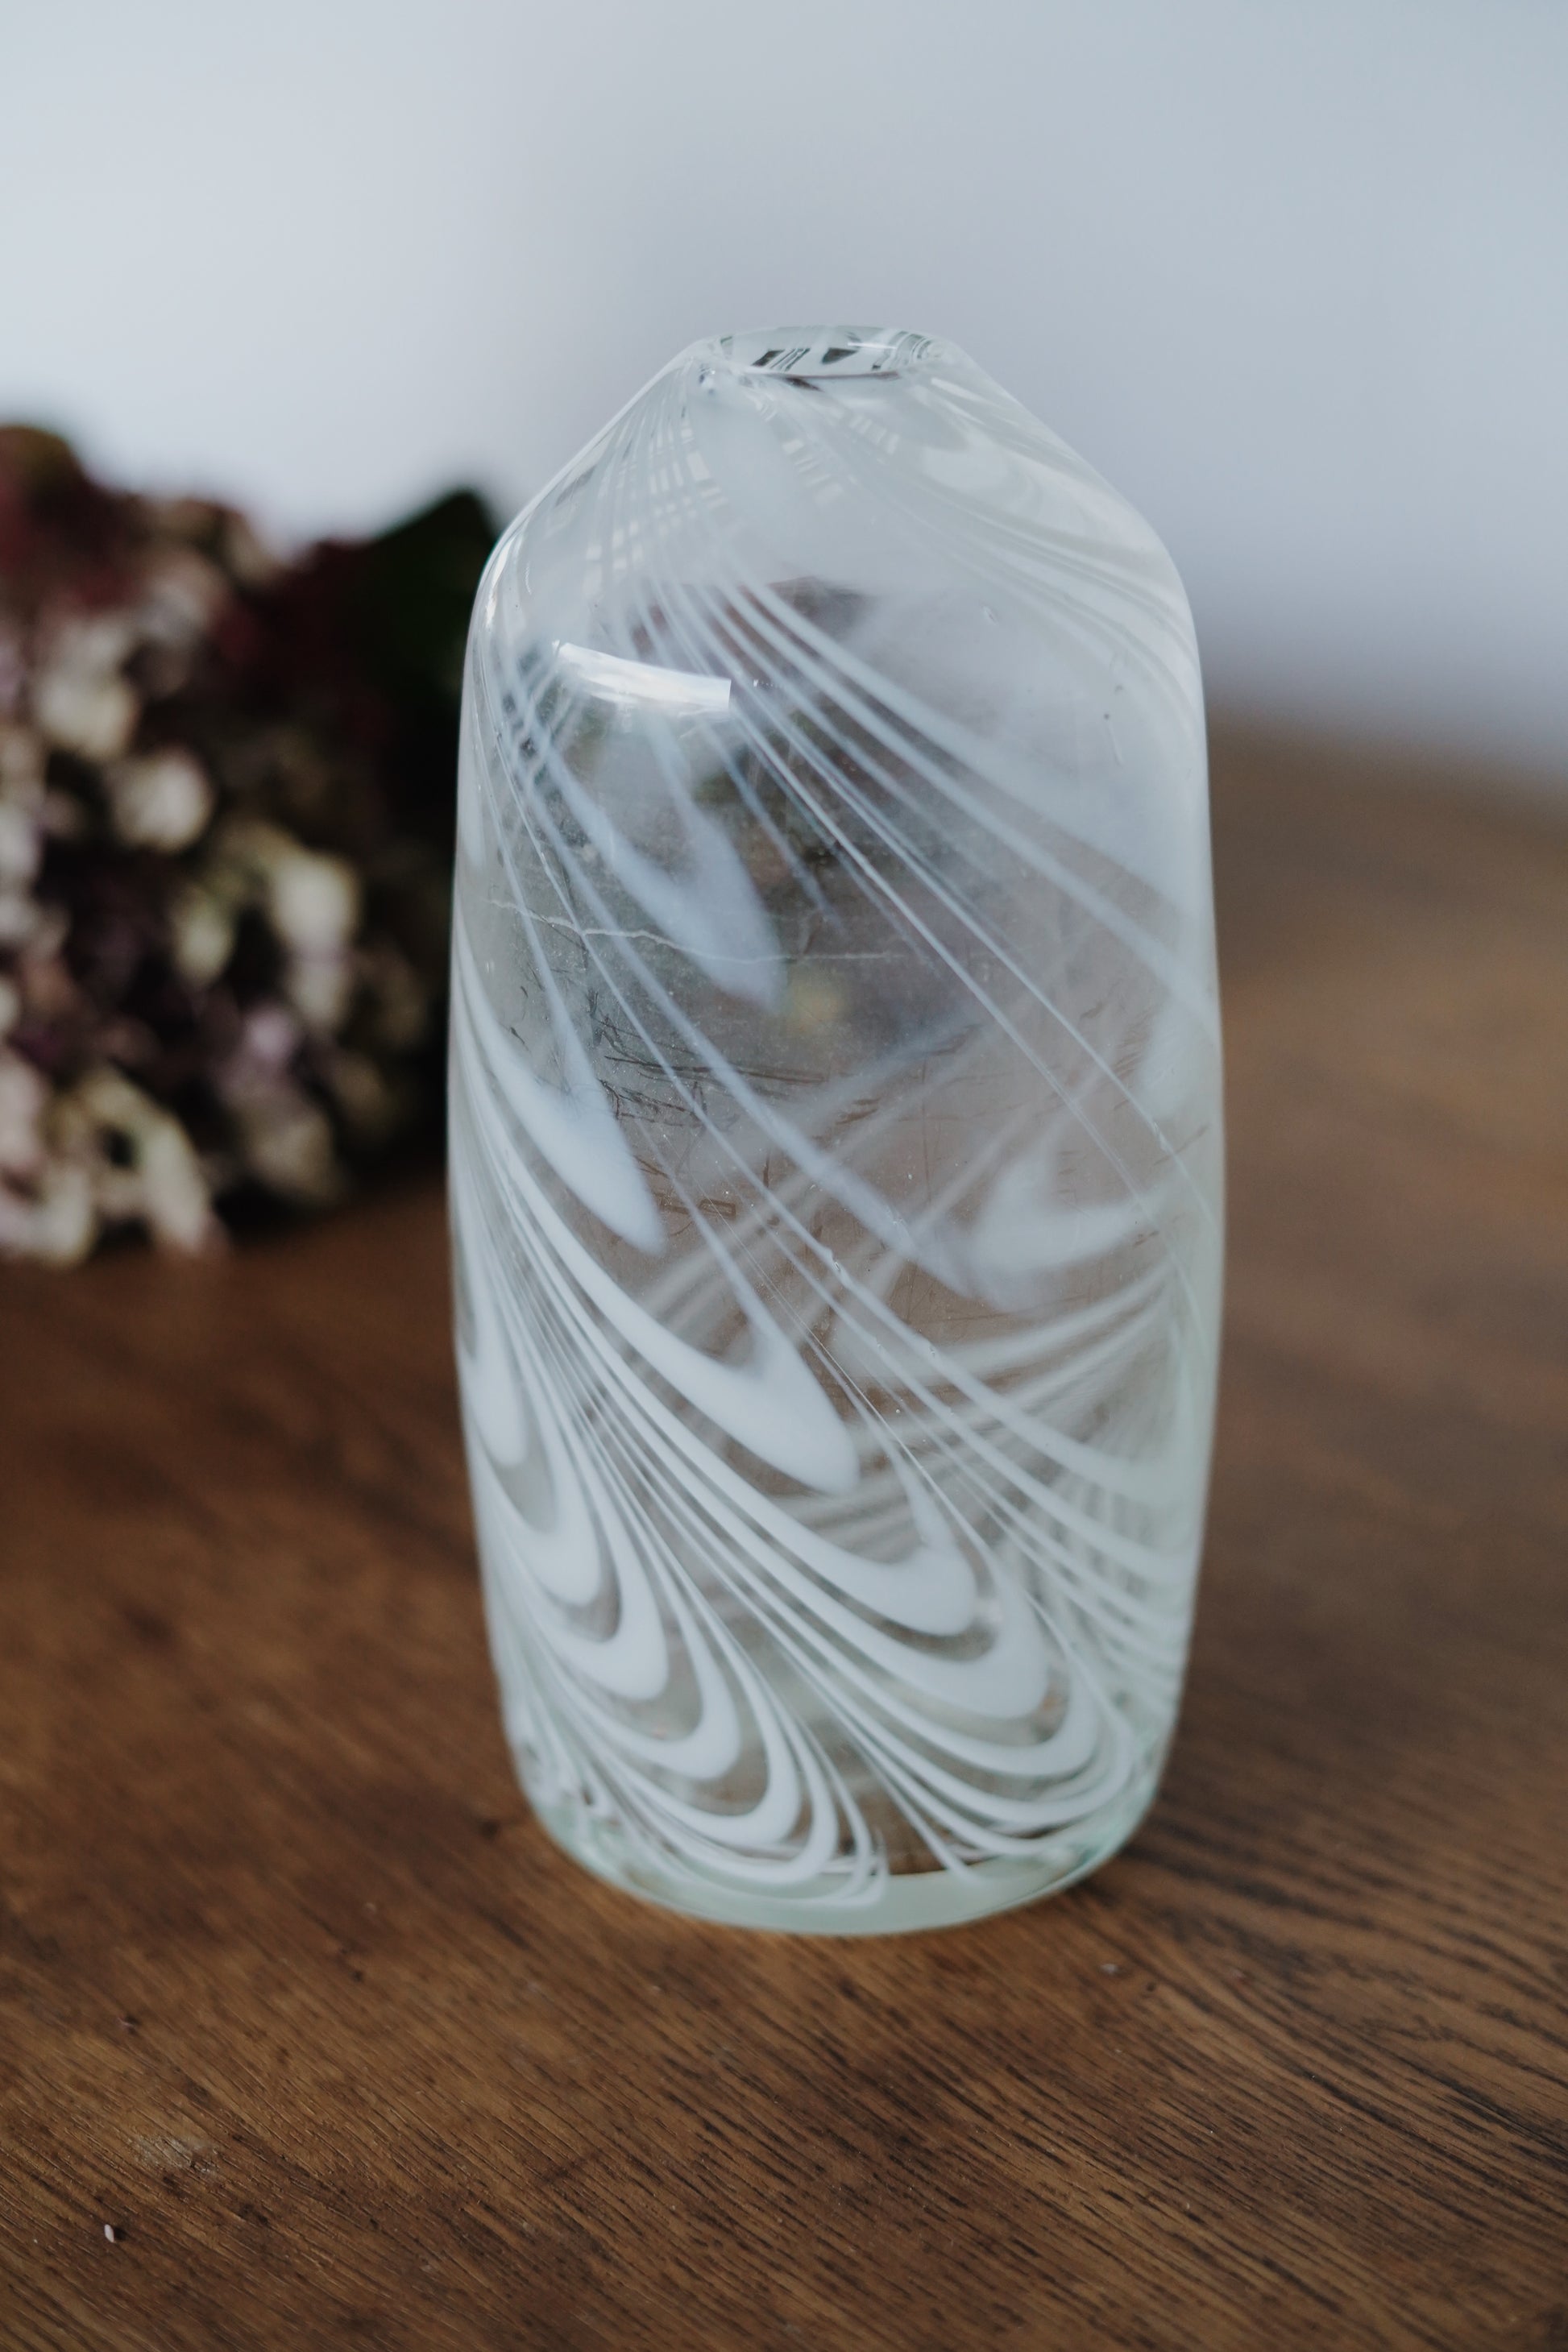 Vase en verre soufflé probablement de Murano - Italie, années 70-80. Le verre est blanchi.